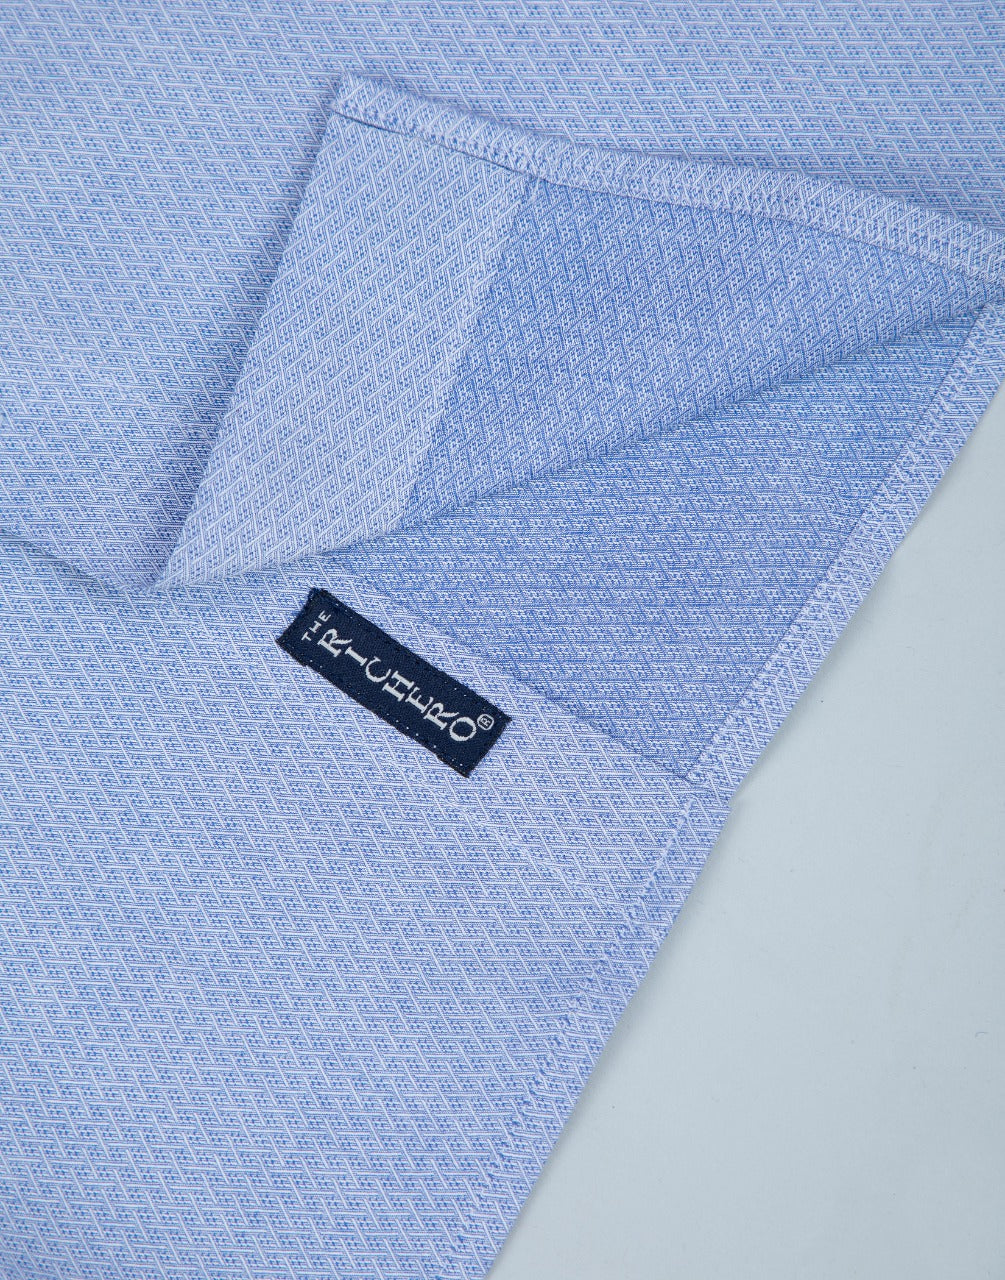 Blue color formal cotton shirt